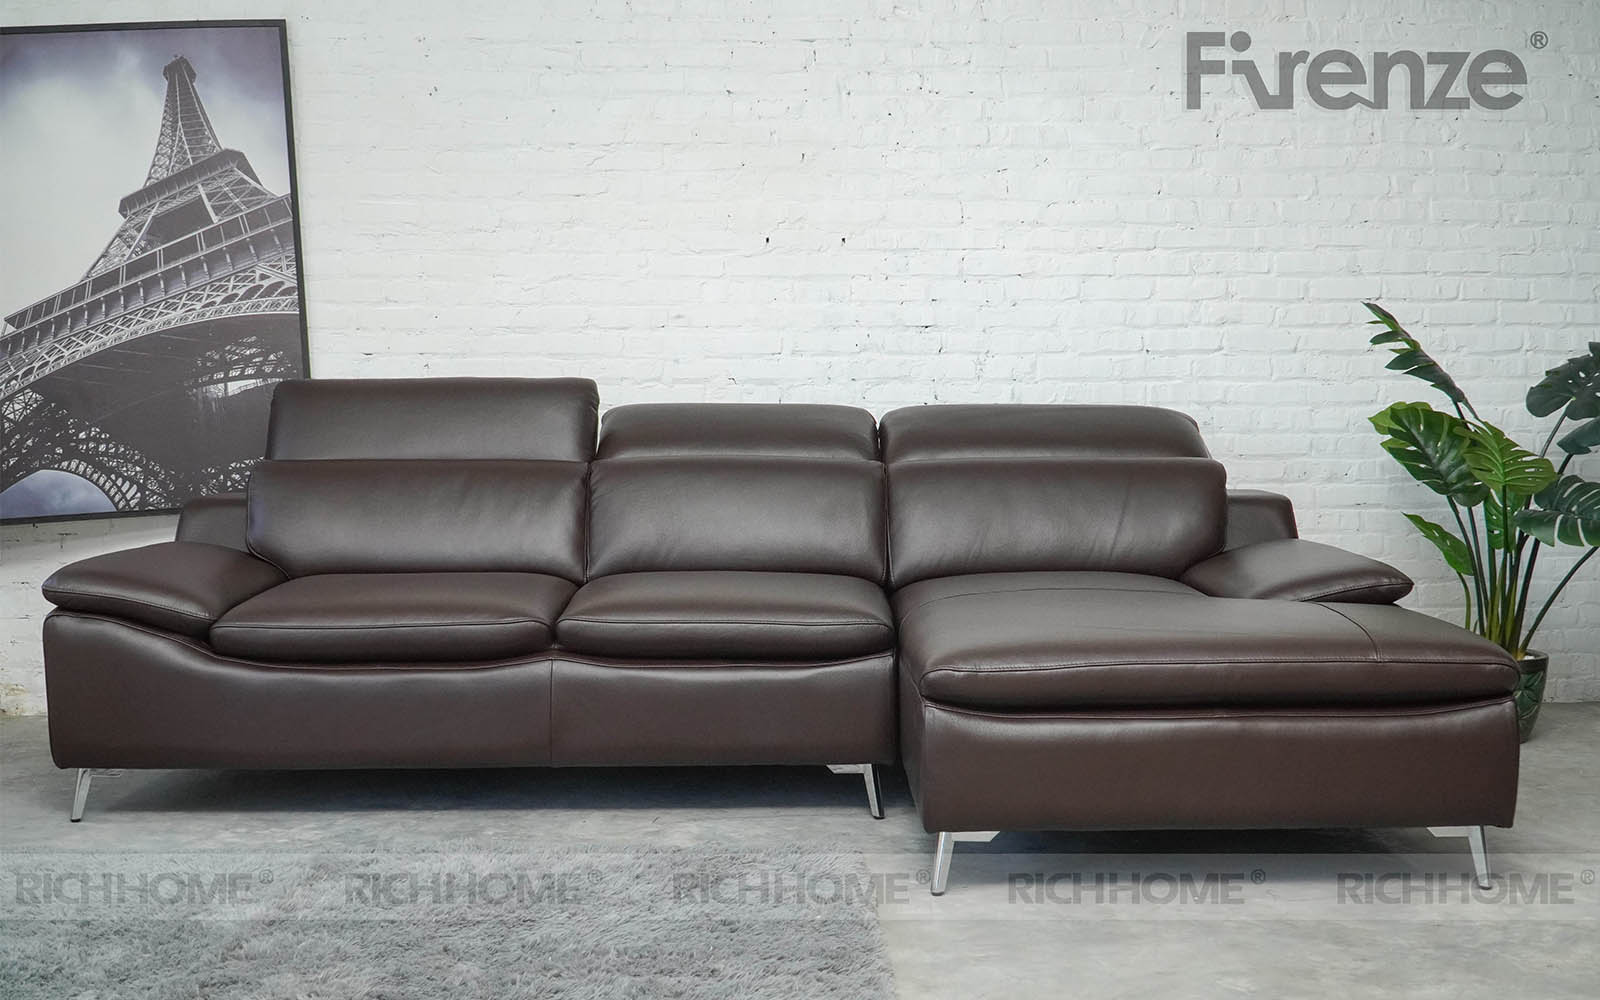 Bật mí cho bạn các mẫu sofa phòng khách cao cấp - Ảnh 2